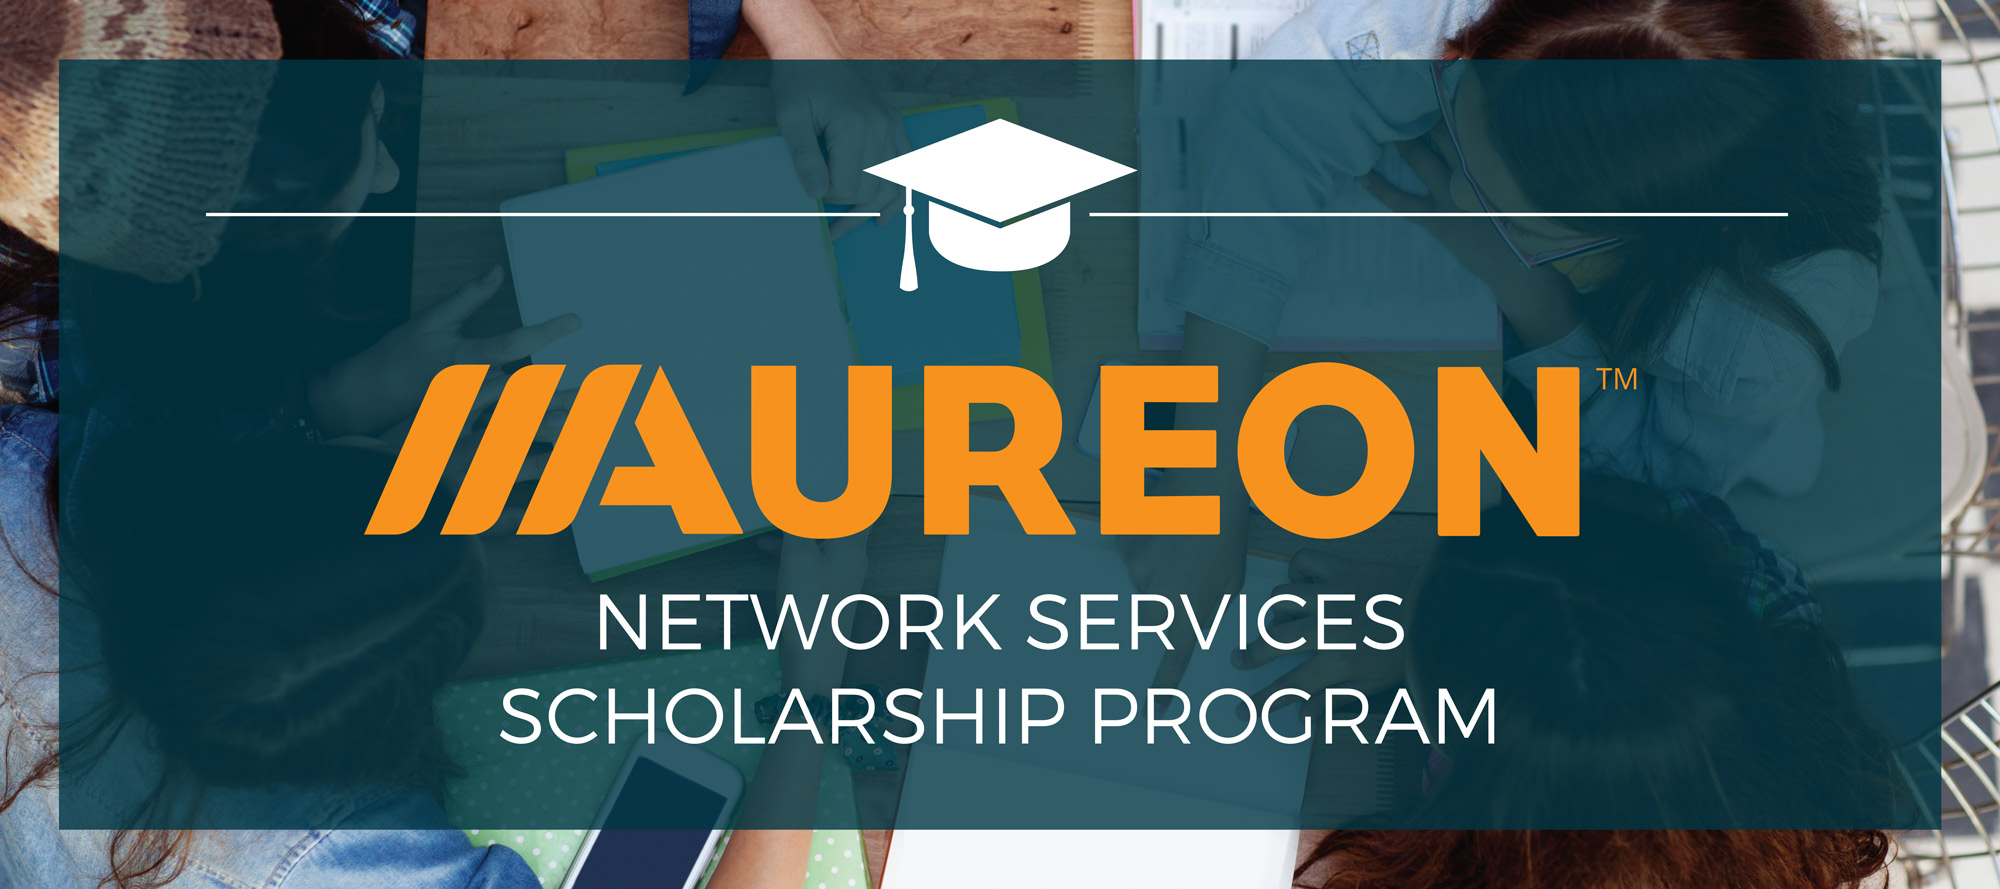 Aureon Scholarship 2019